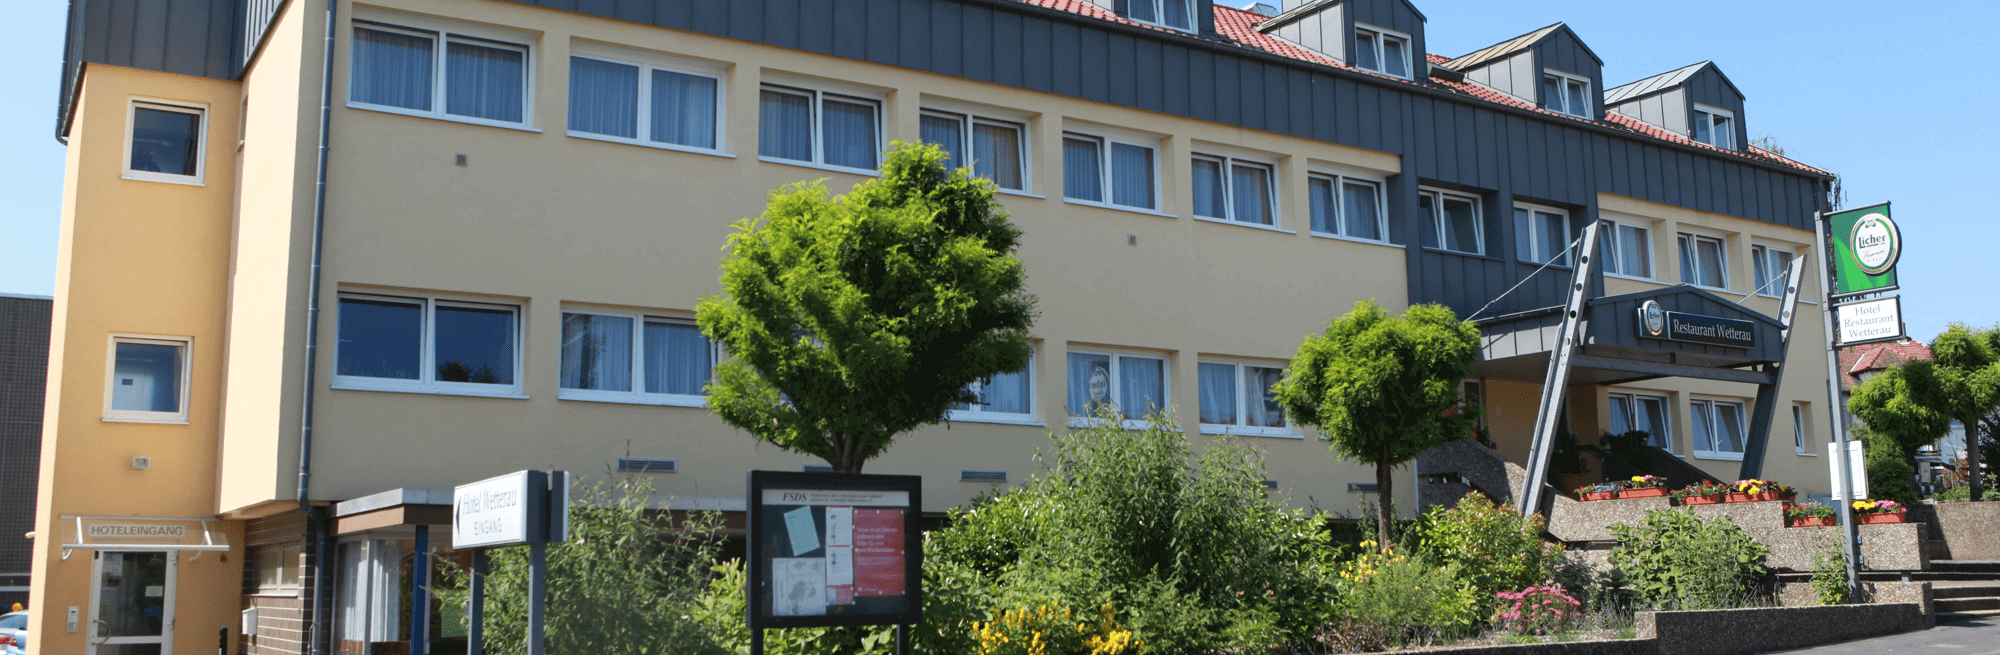 Hotel & Restaurant Wetterau in Wölfersheim bei Langenhain-Ziegenberg